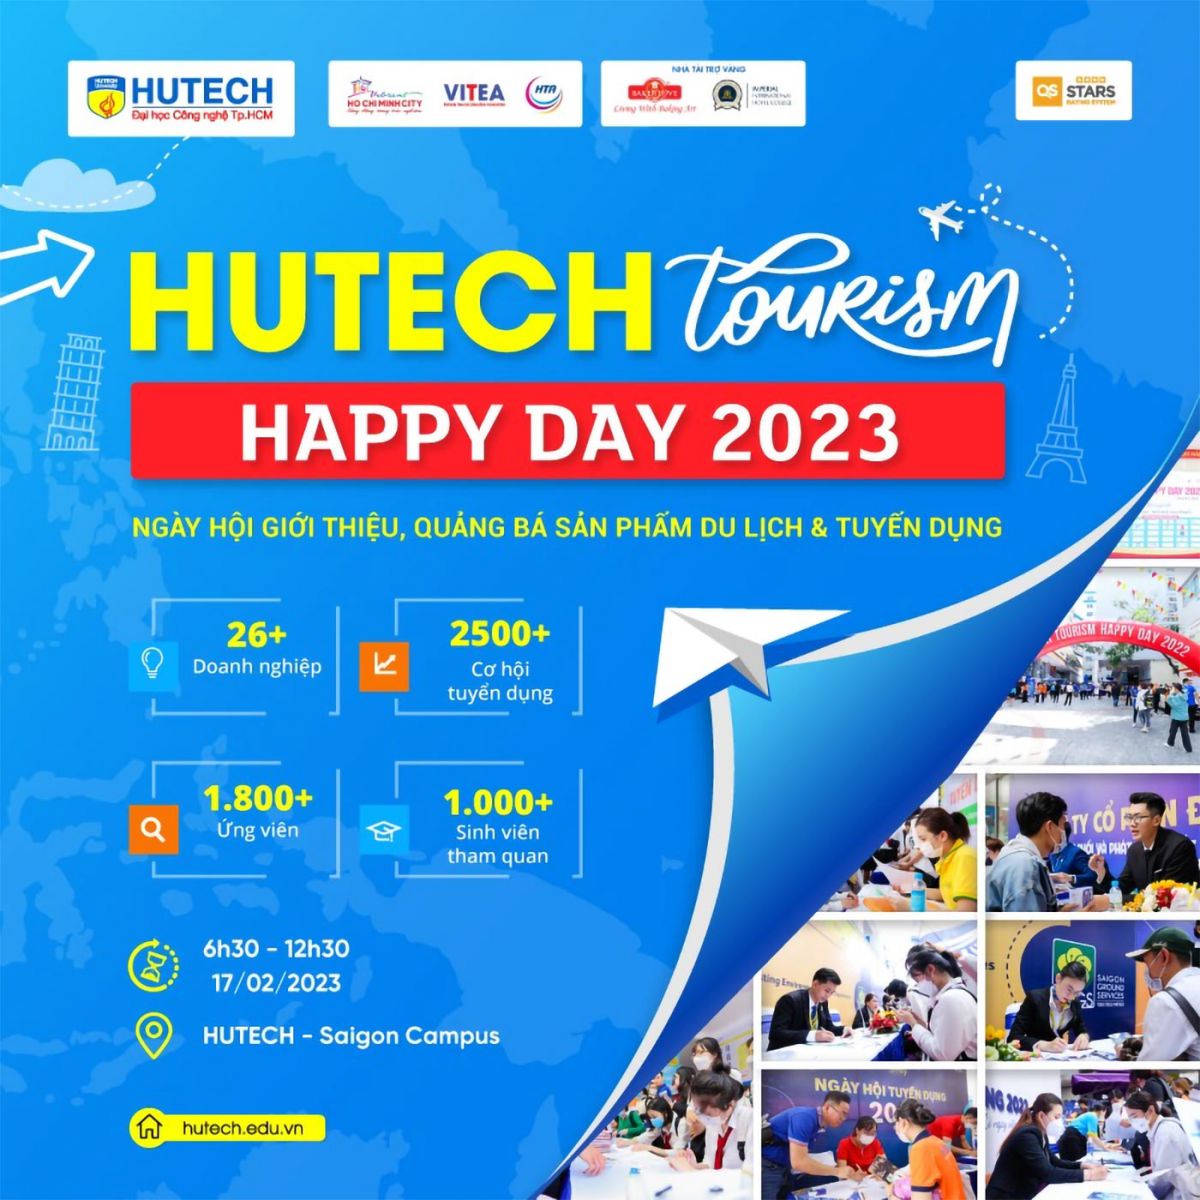 Hơn 30 doanh nghiệp cần tuyển 2.500 việc làm tại HUTECH Tourism Happy Day 2023 - Ảnh 1